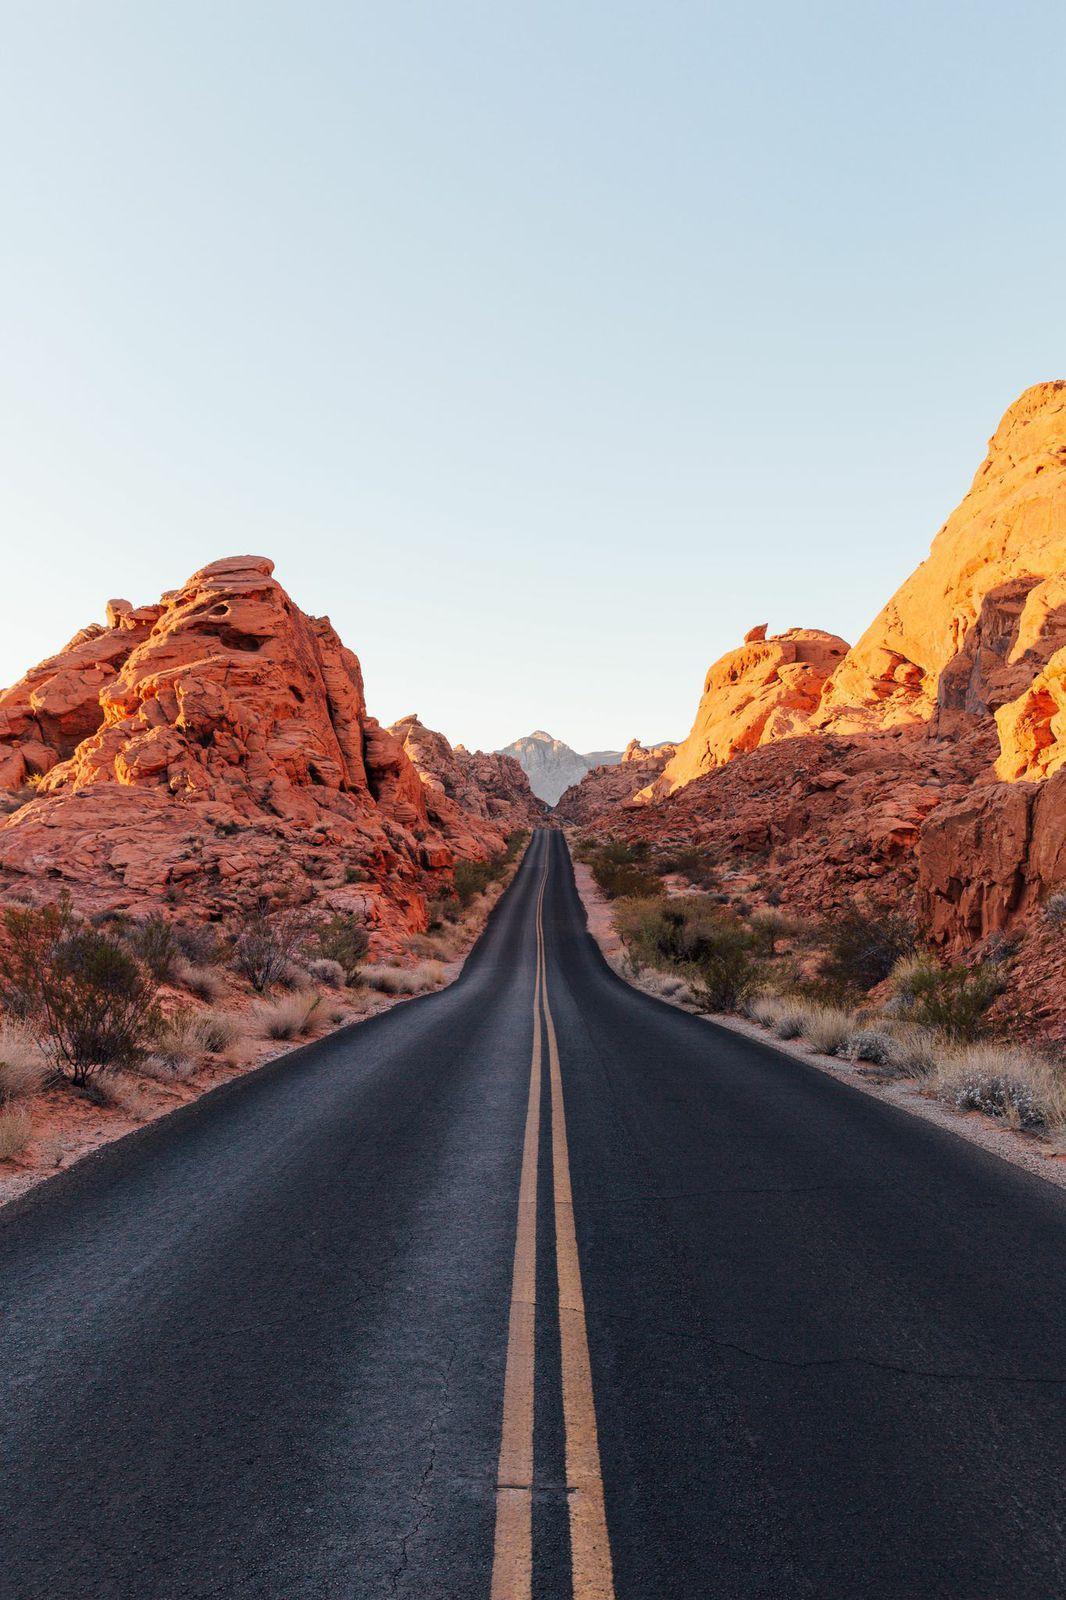 The long road aheadada desert. Beautiful